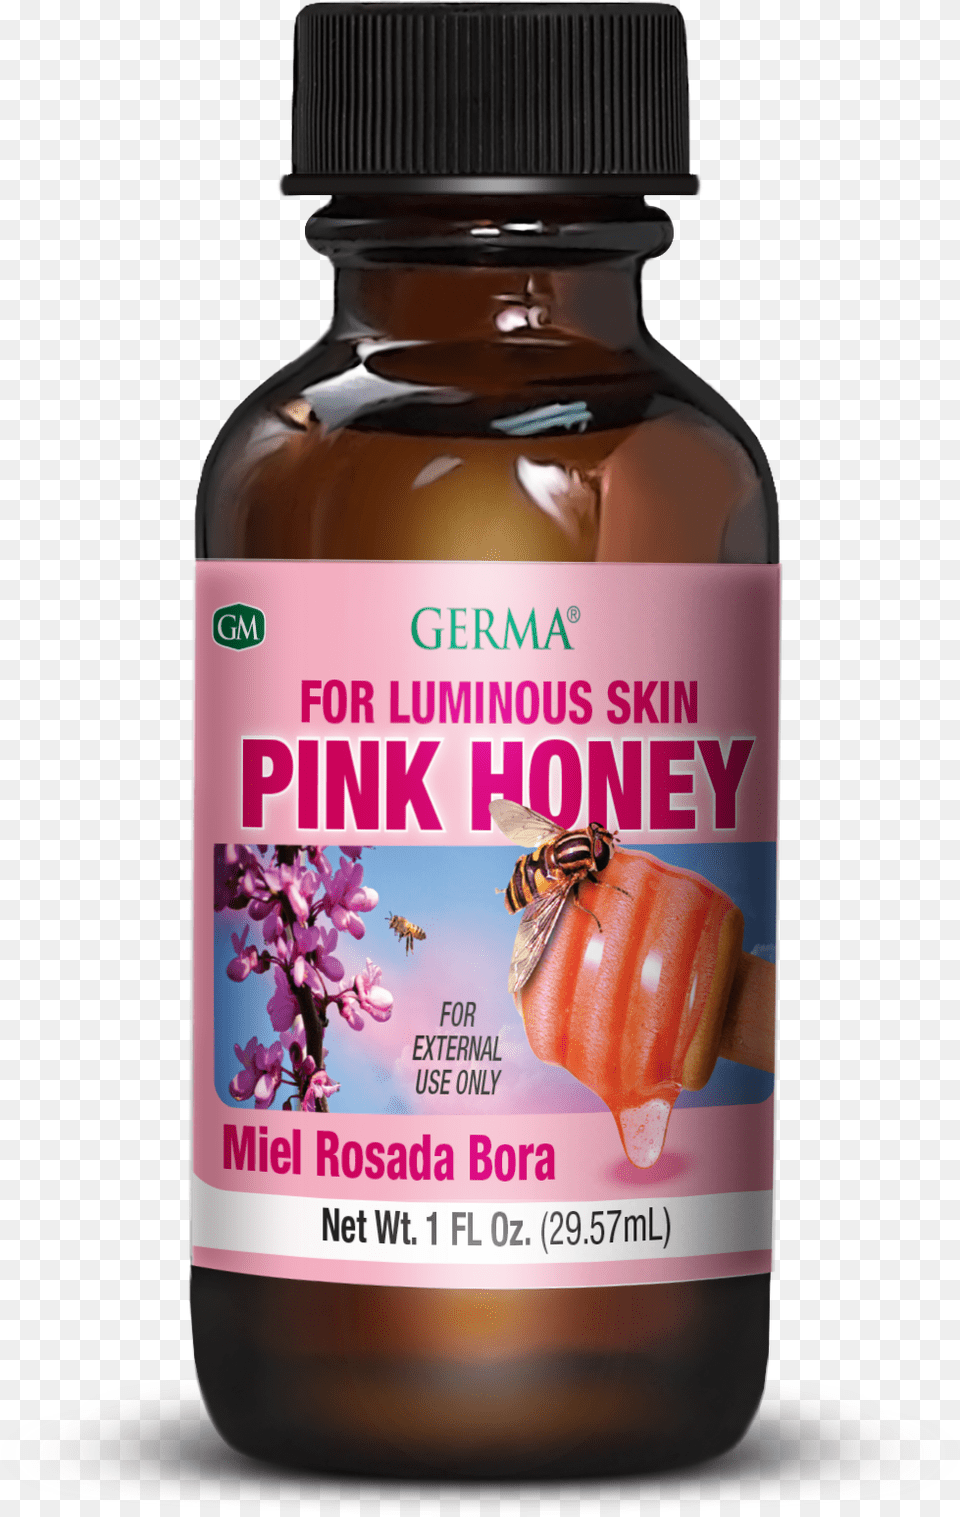 Germa Miel Rosada Bora Oil, Plant, Herbs, Herbal, Flower Png